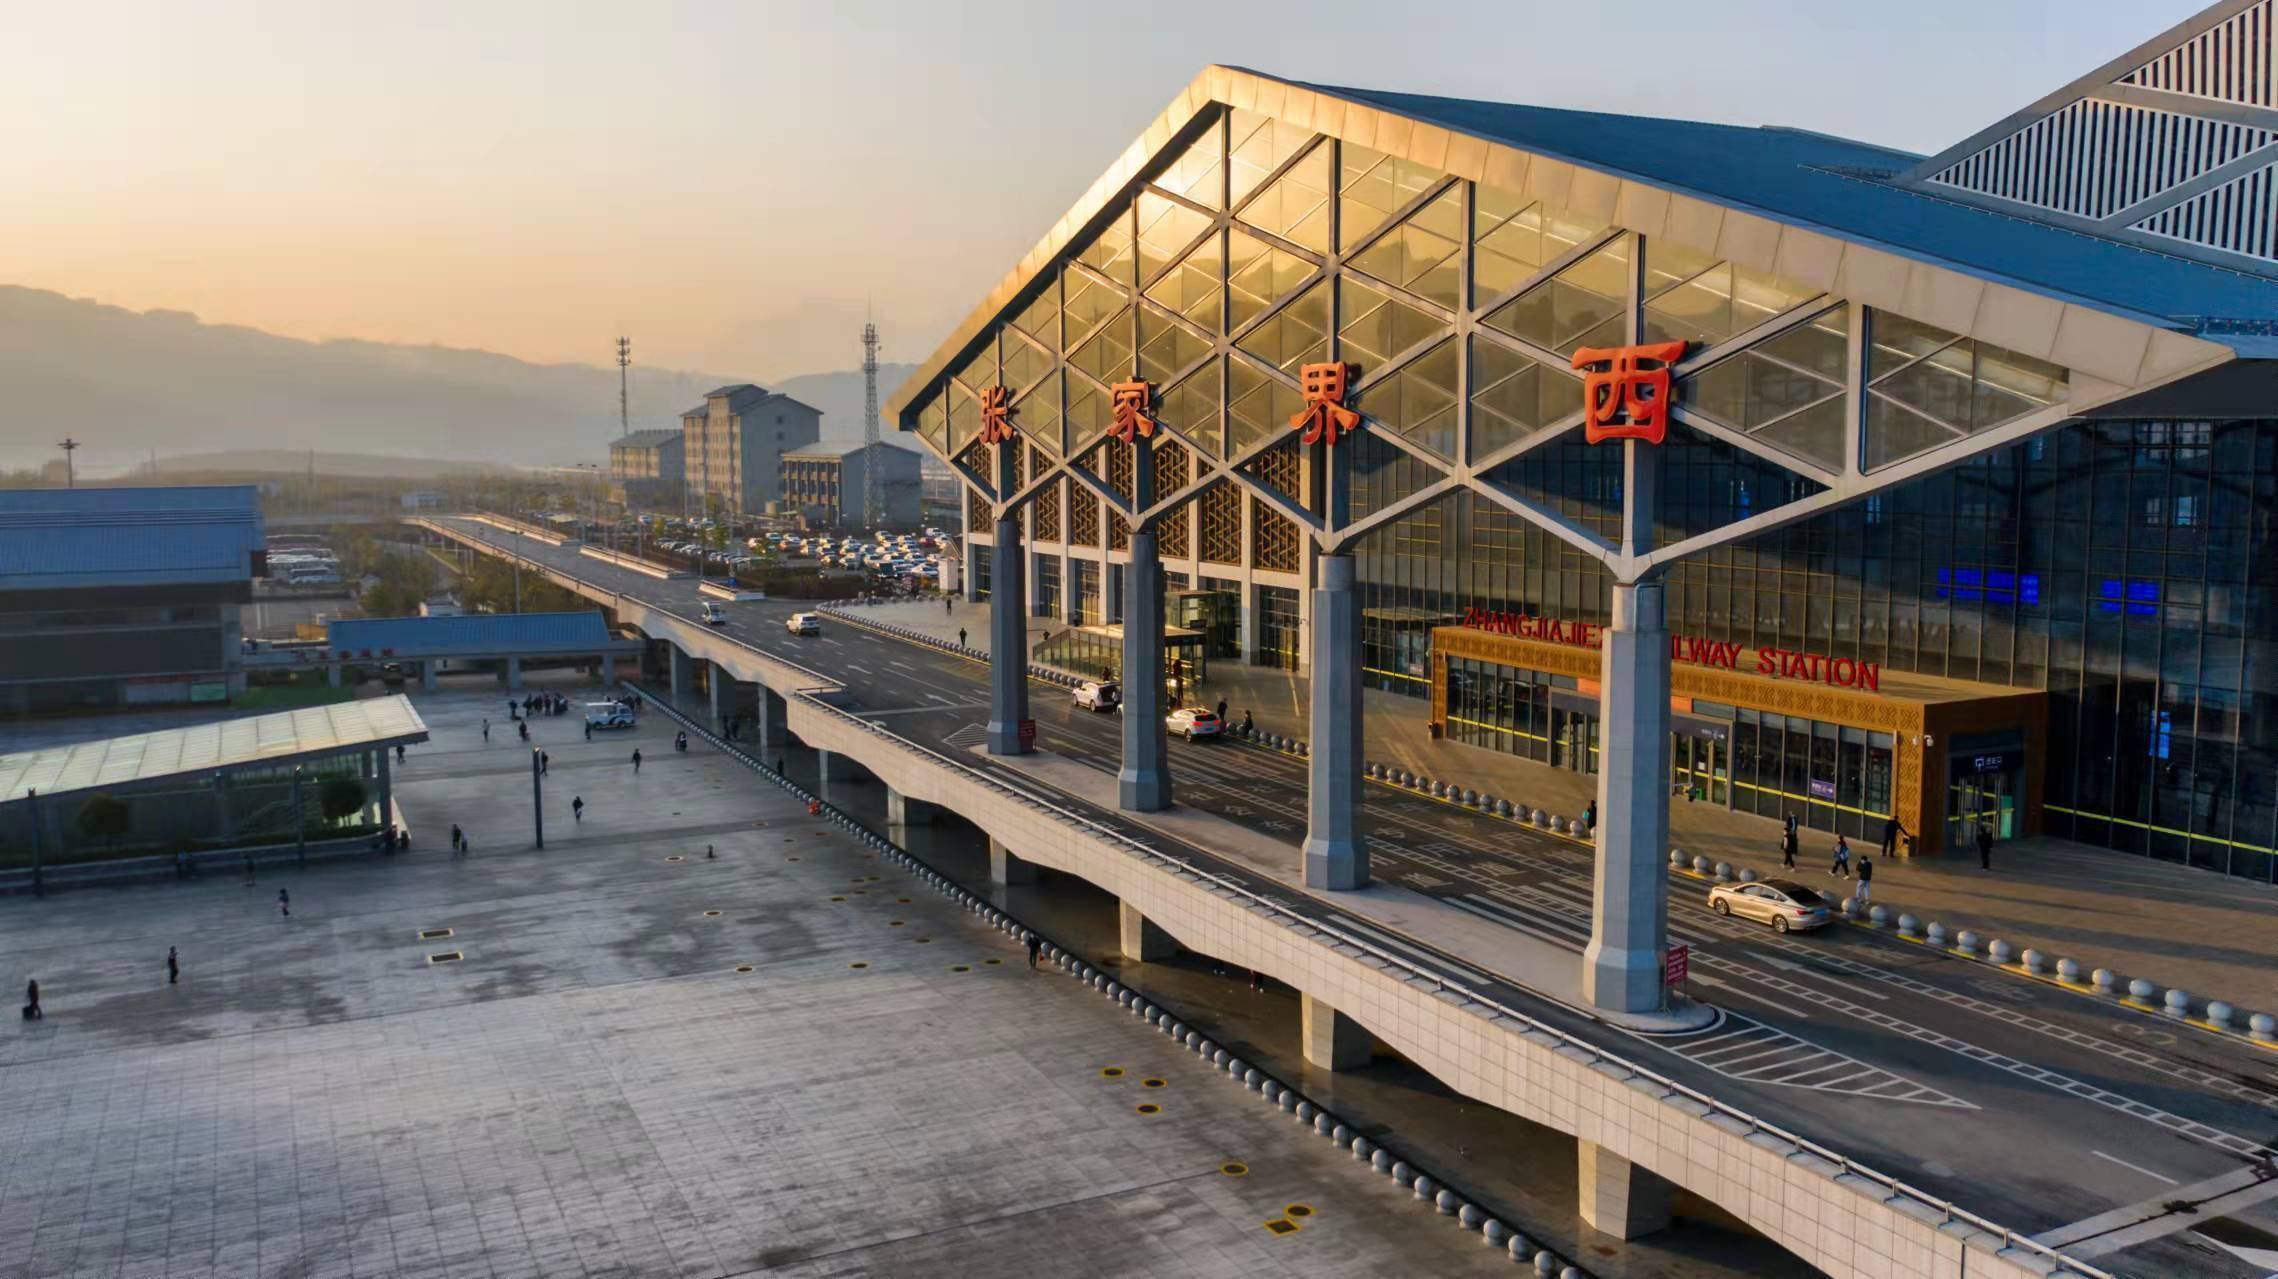 中国铁路广州局集团有限公司相关负责人表示,张吉怀高铁是一条兼顾